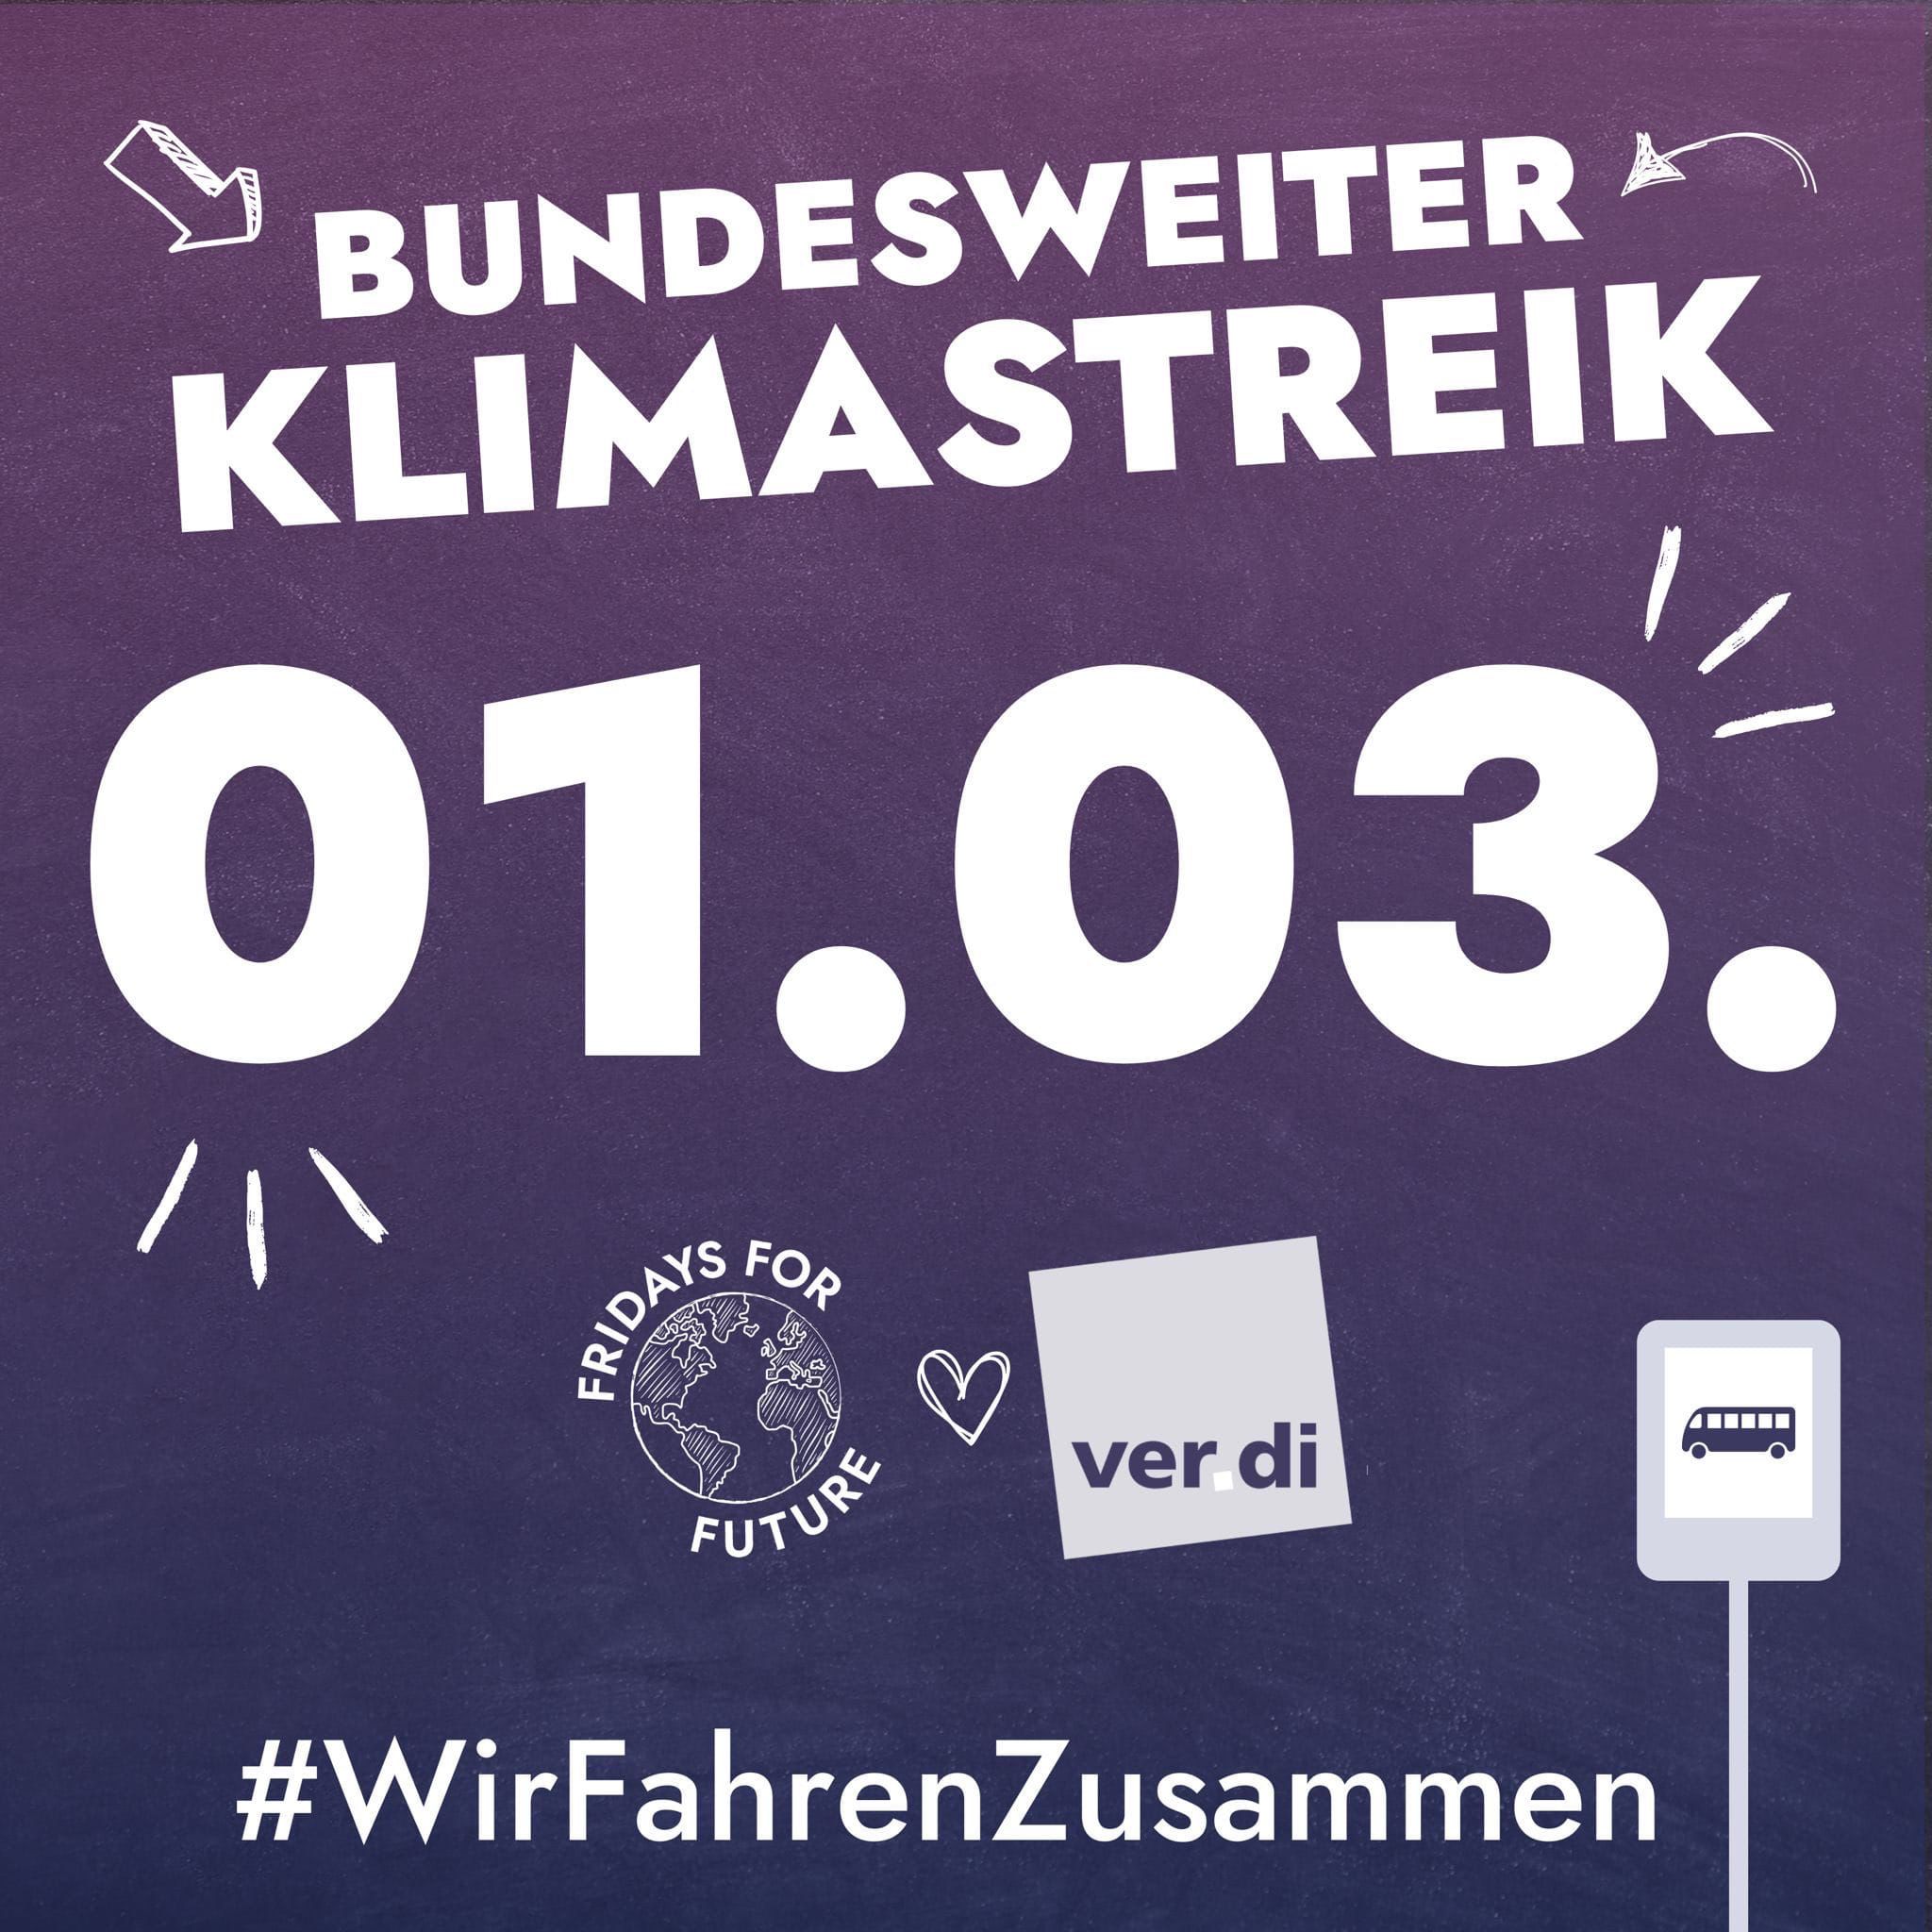 In weißer Schrift auf lila Hintergrund: Bundesweiter Klimastreik 01.03., Fridays for Future, verdi, #WirFahrenZusammen